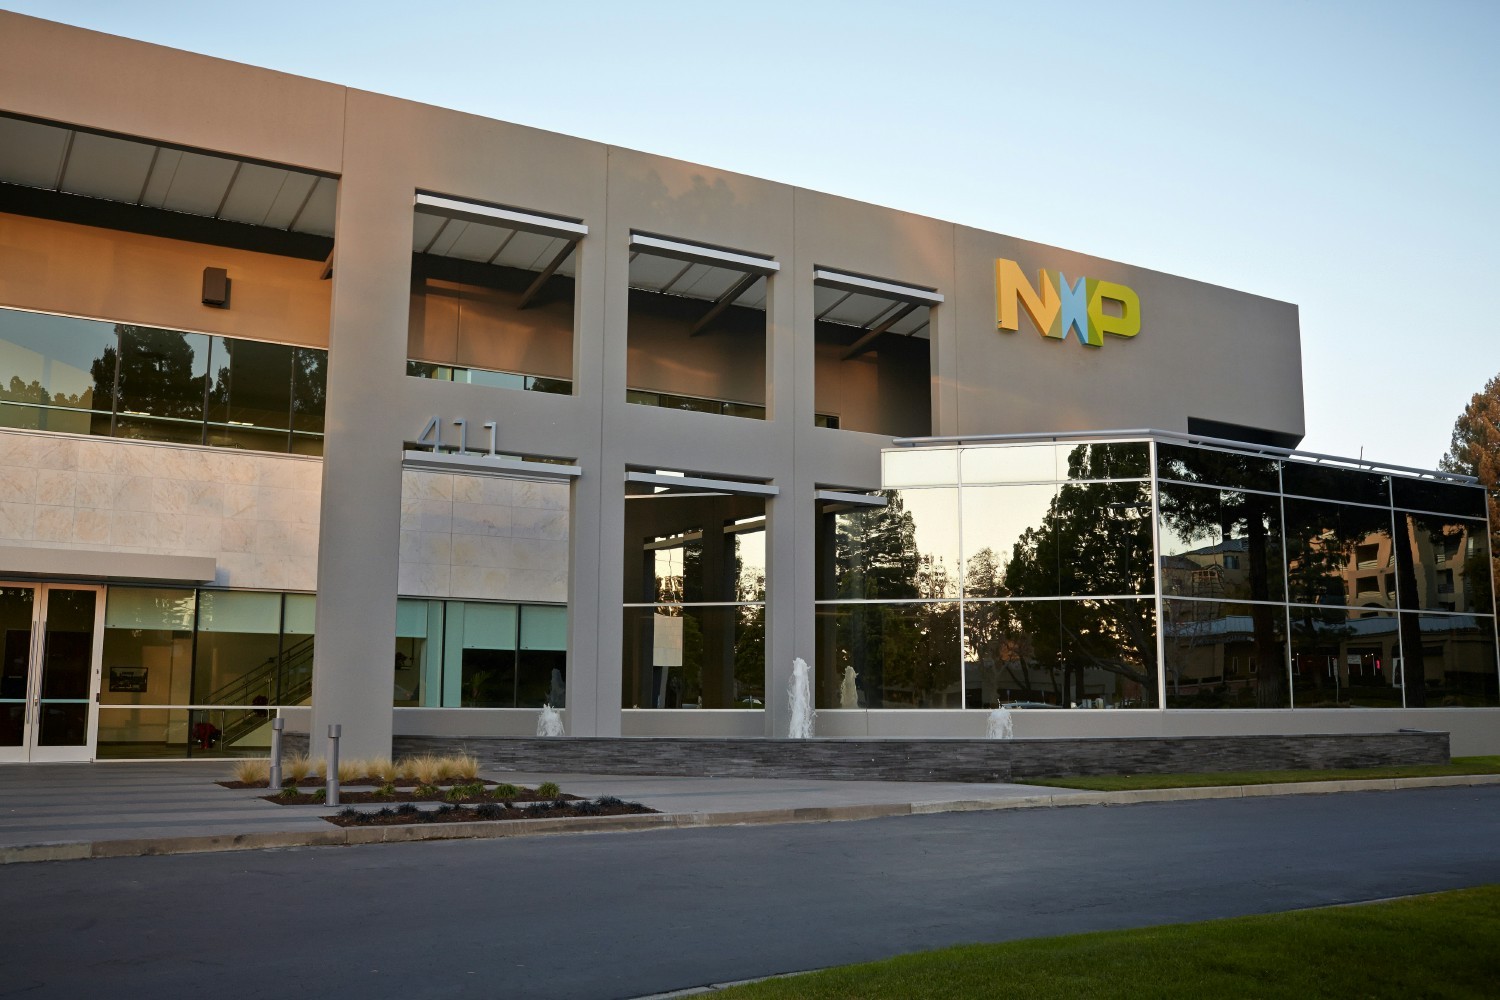 NXP site located in San Jose, CA.